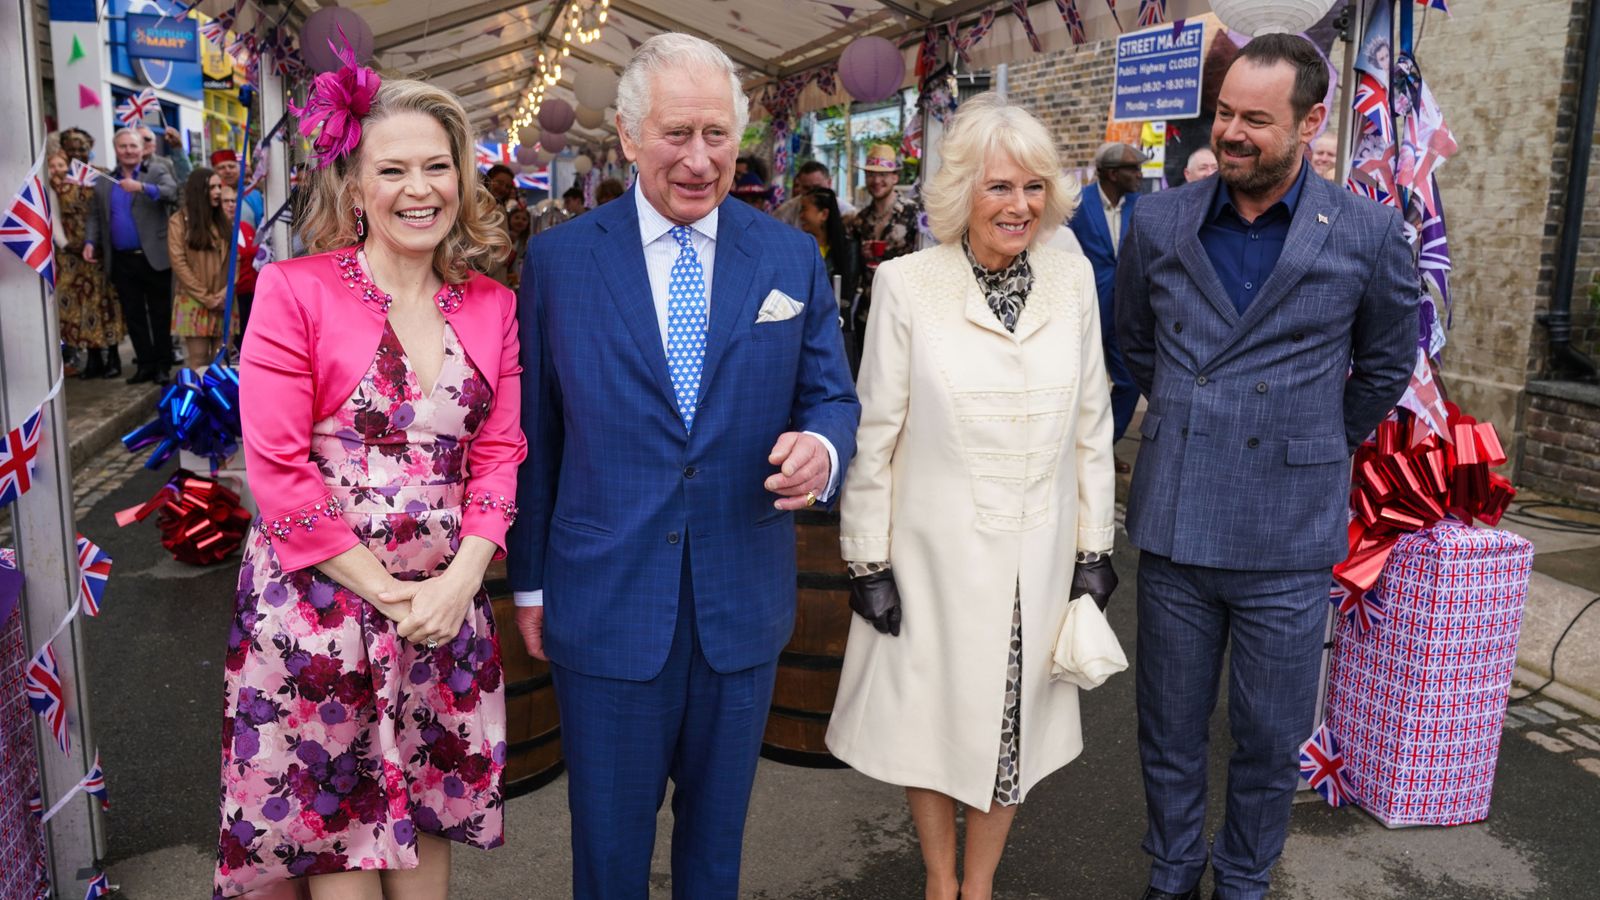 الأمير تشارلز ودوقة كورنوال يظهران كضيفين في EastEnders بمناسبة اليوبيل البلاتيني للملكة |  أخبار النمل والفنون